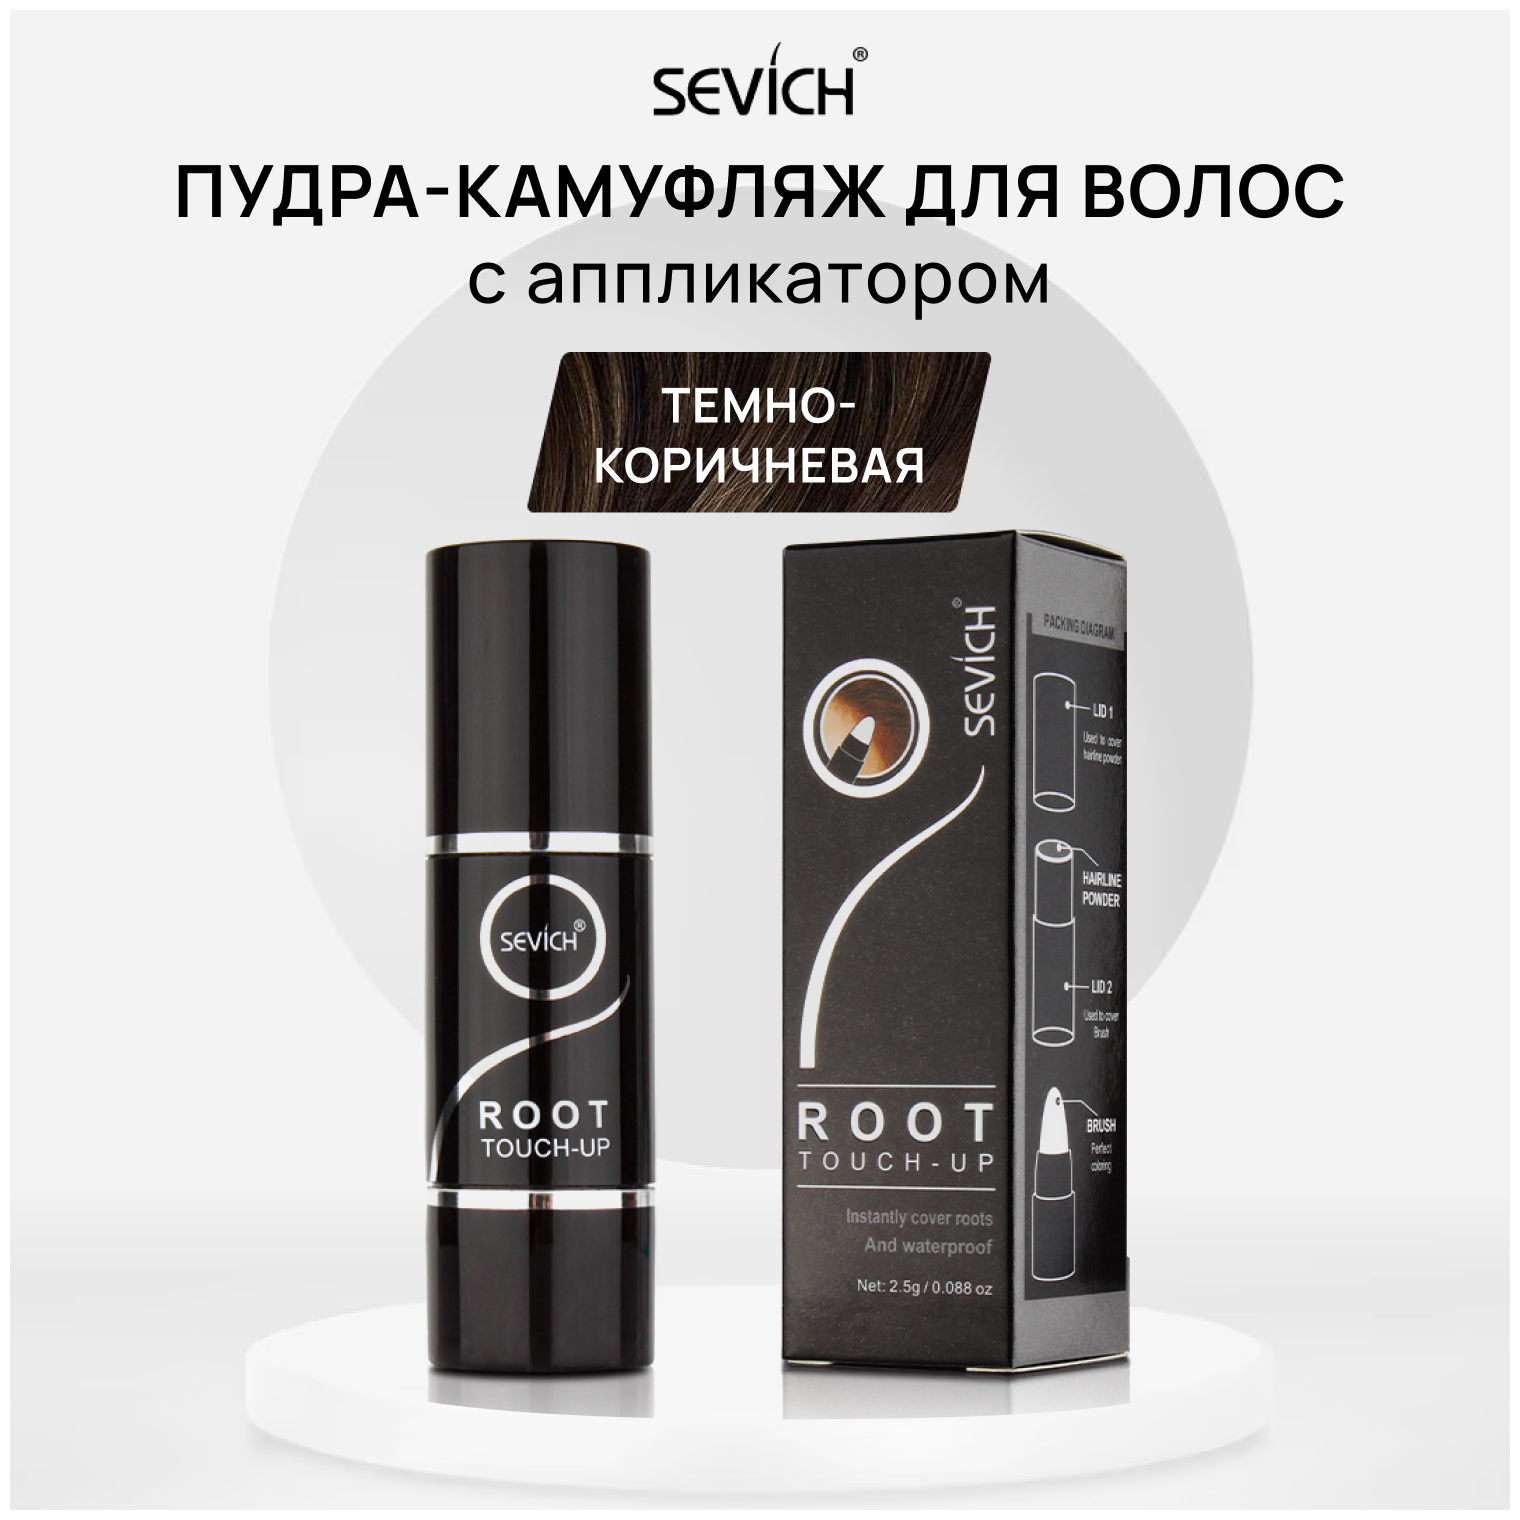 Sevich (Севич) Root Touch-Up Пудра камуфлирующая для волос в форме стика с аппликатором, маскирующая, цвет темно-коричневый 2,5 г